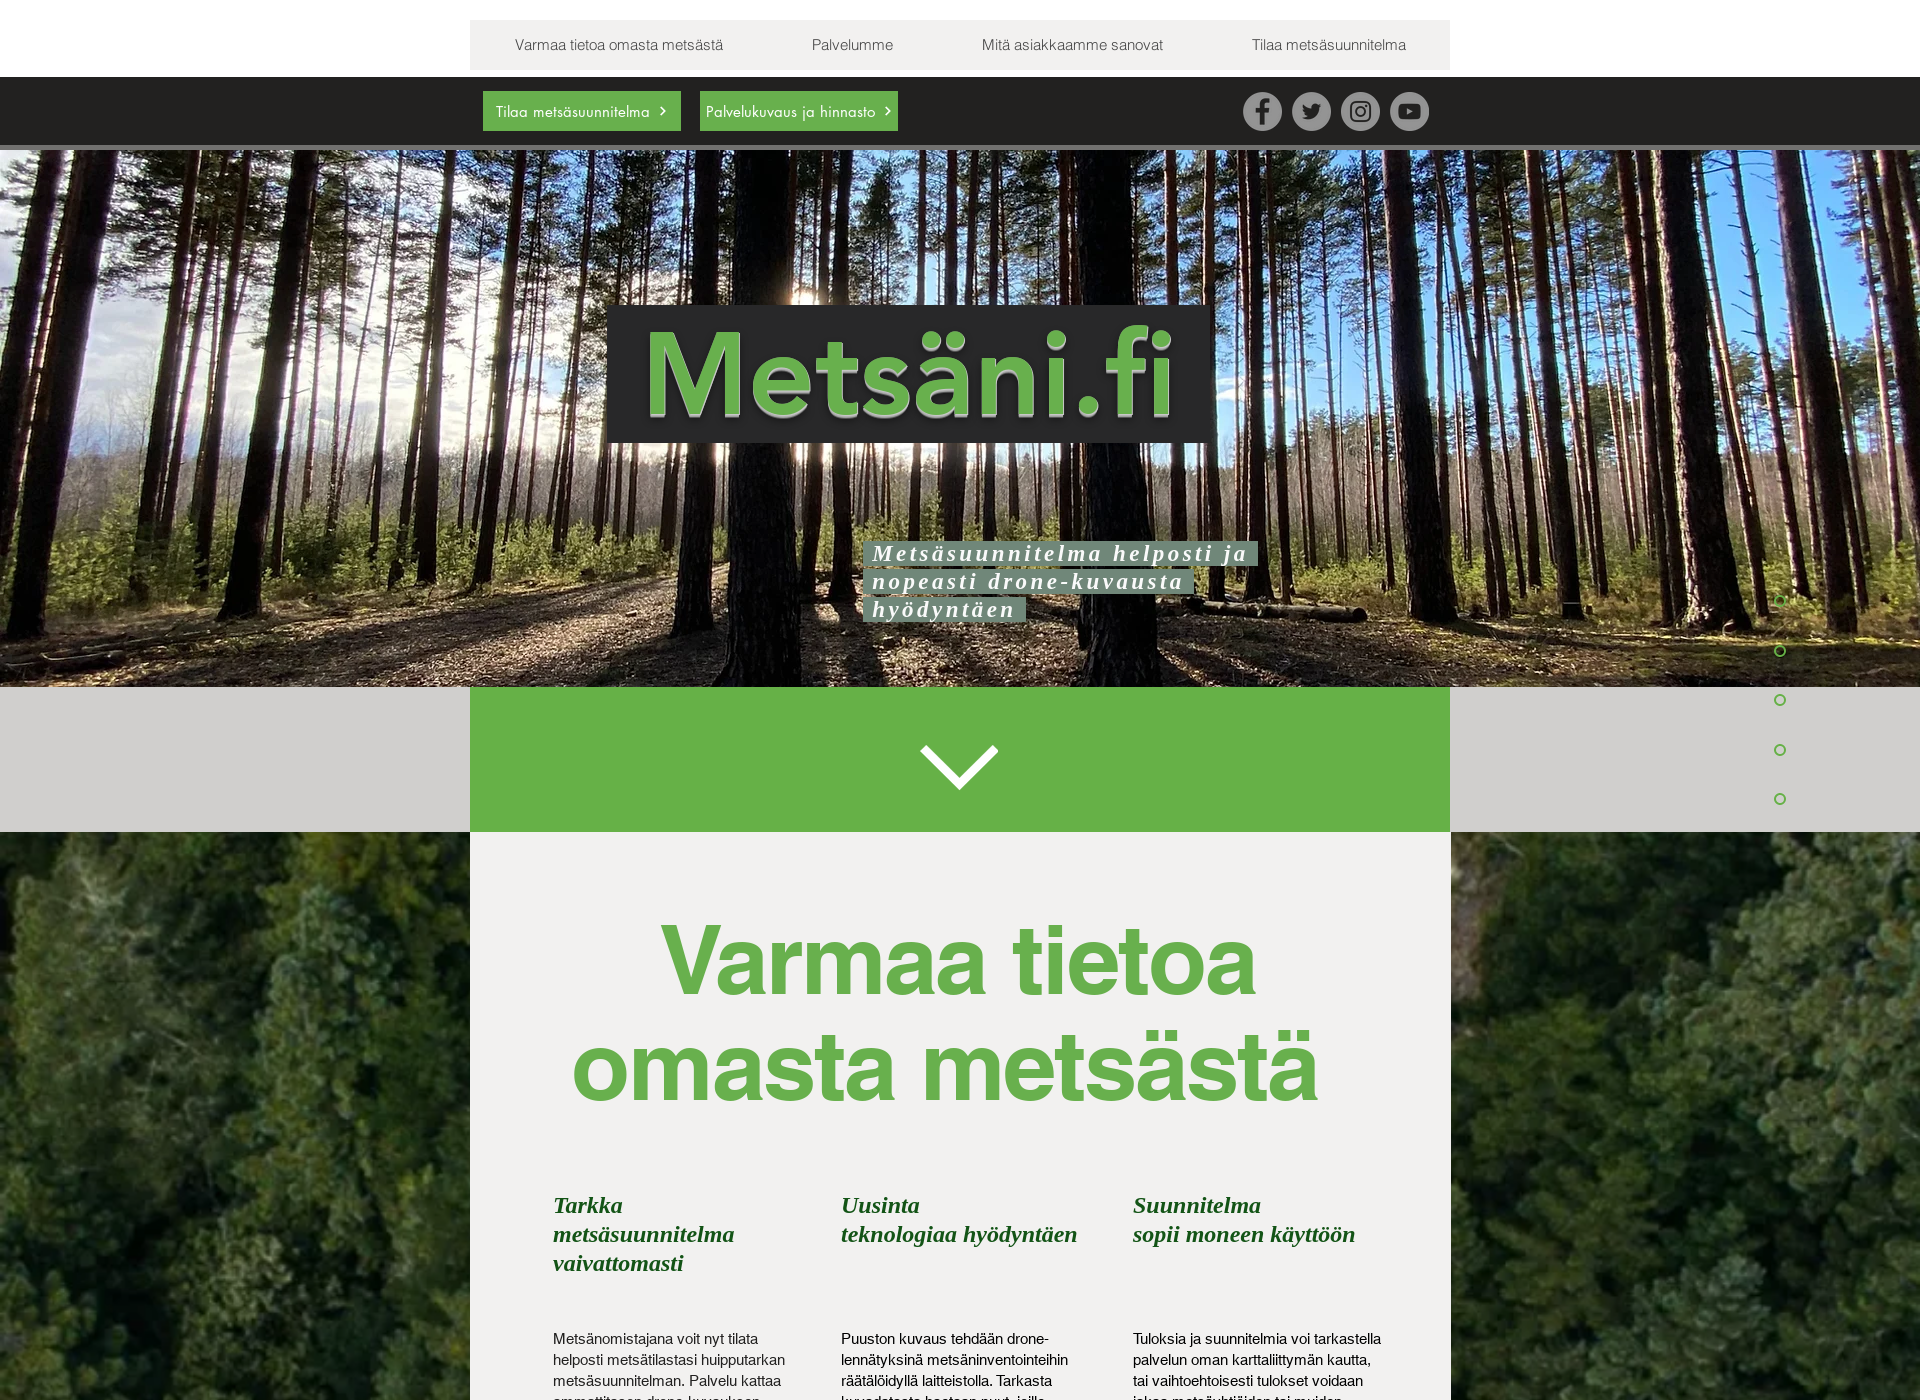 Näyttökuva metsäni.fi